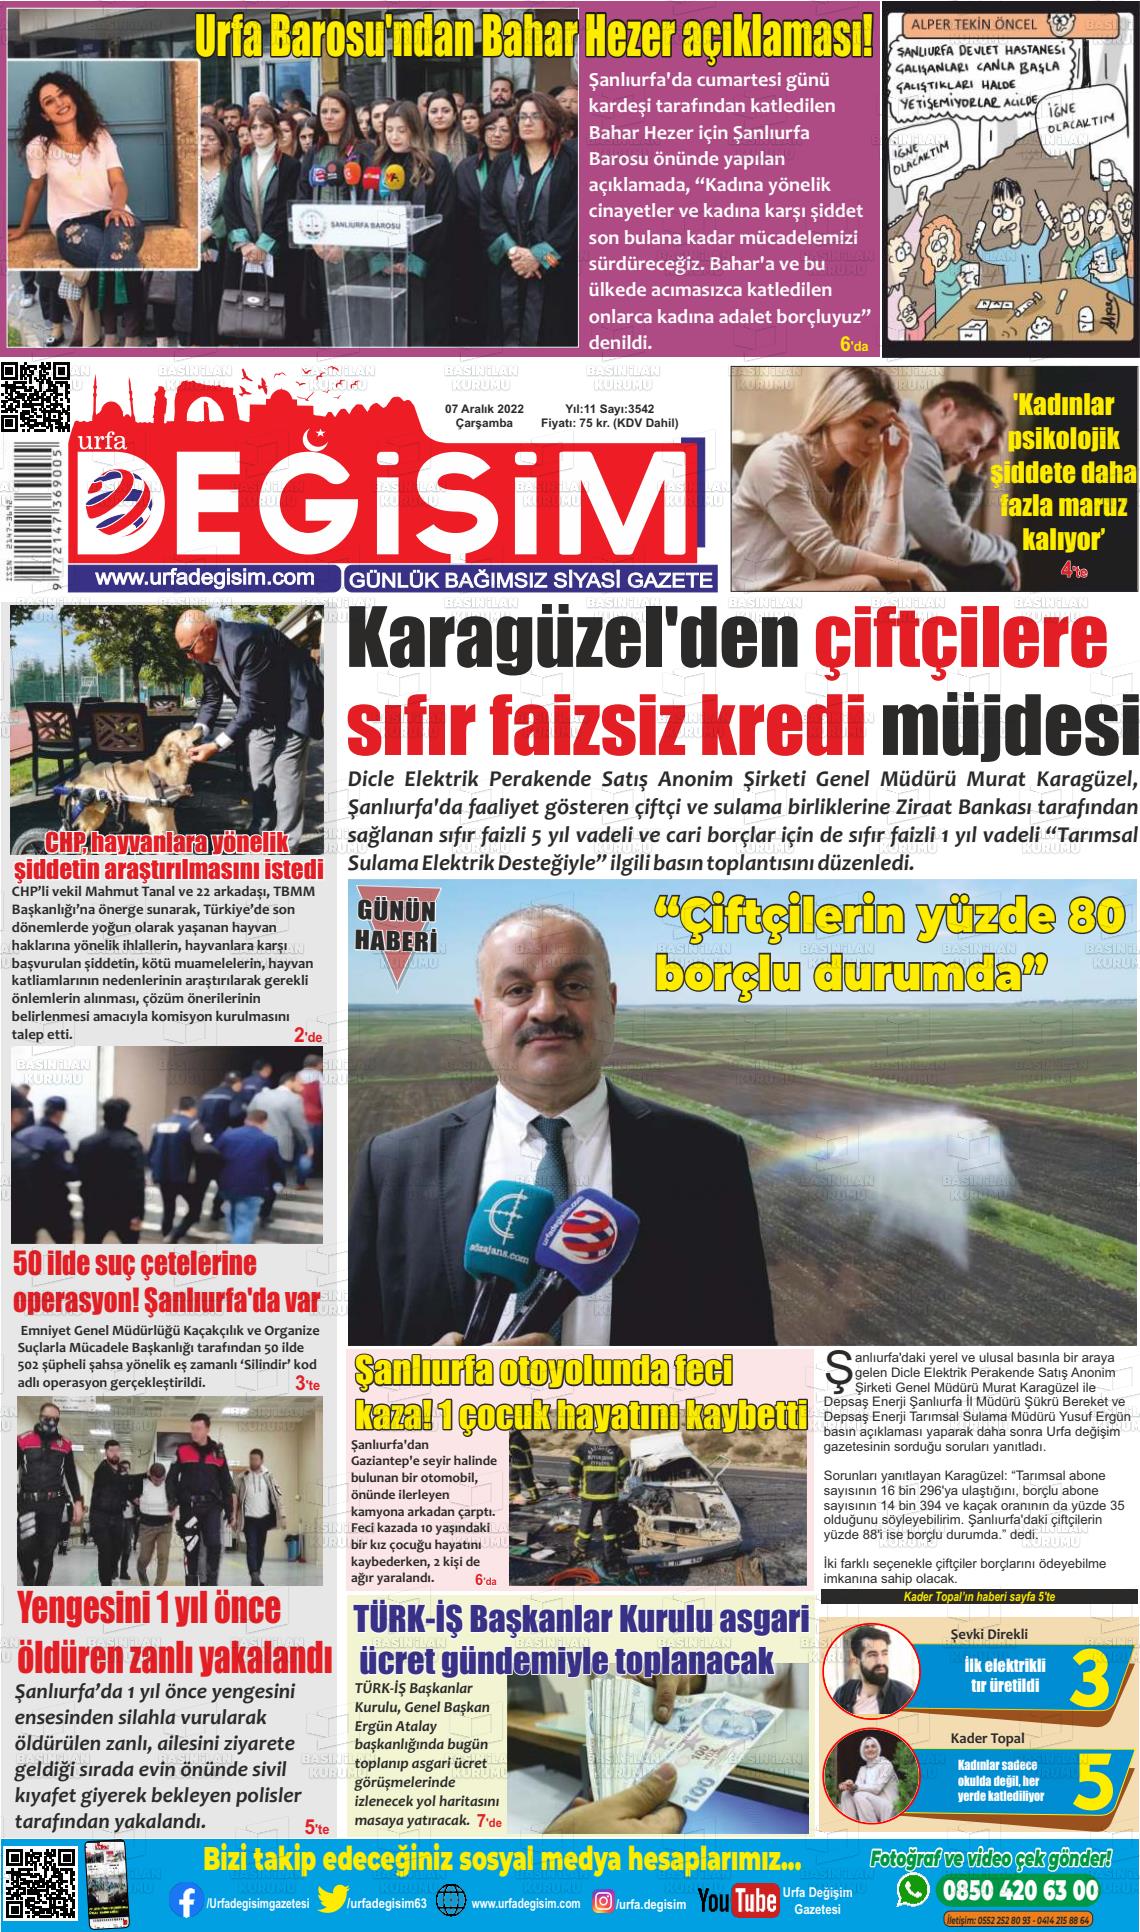 07 Aralık 2022 Urfa Değişim Gazete Manşeti